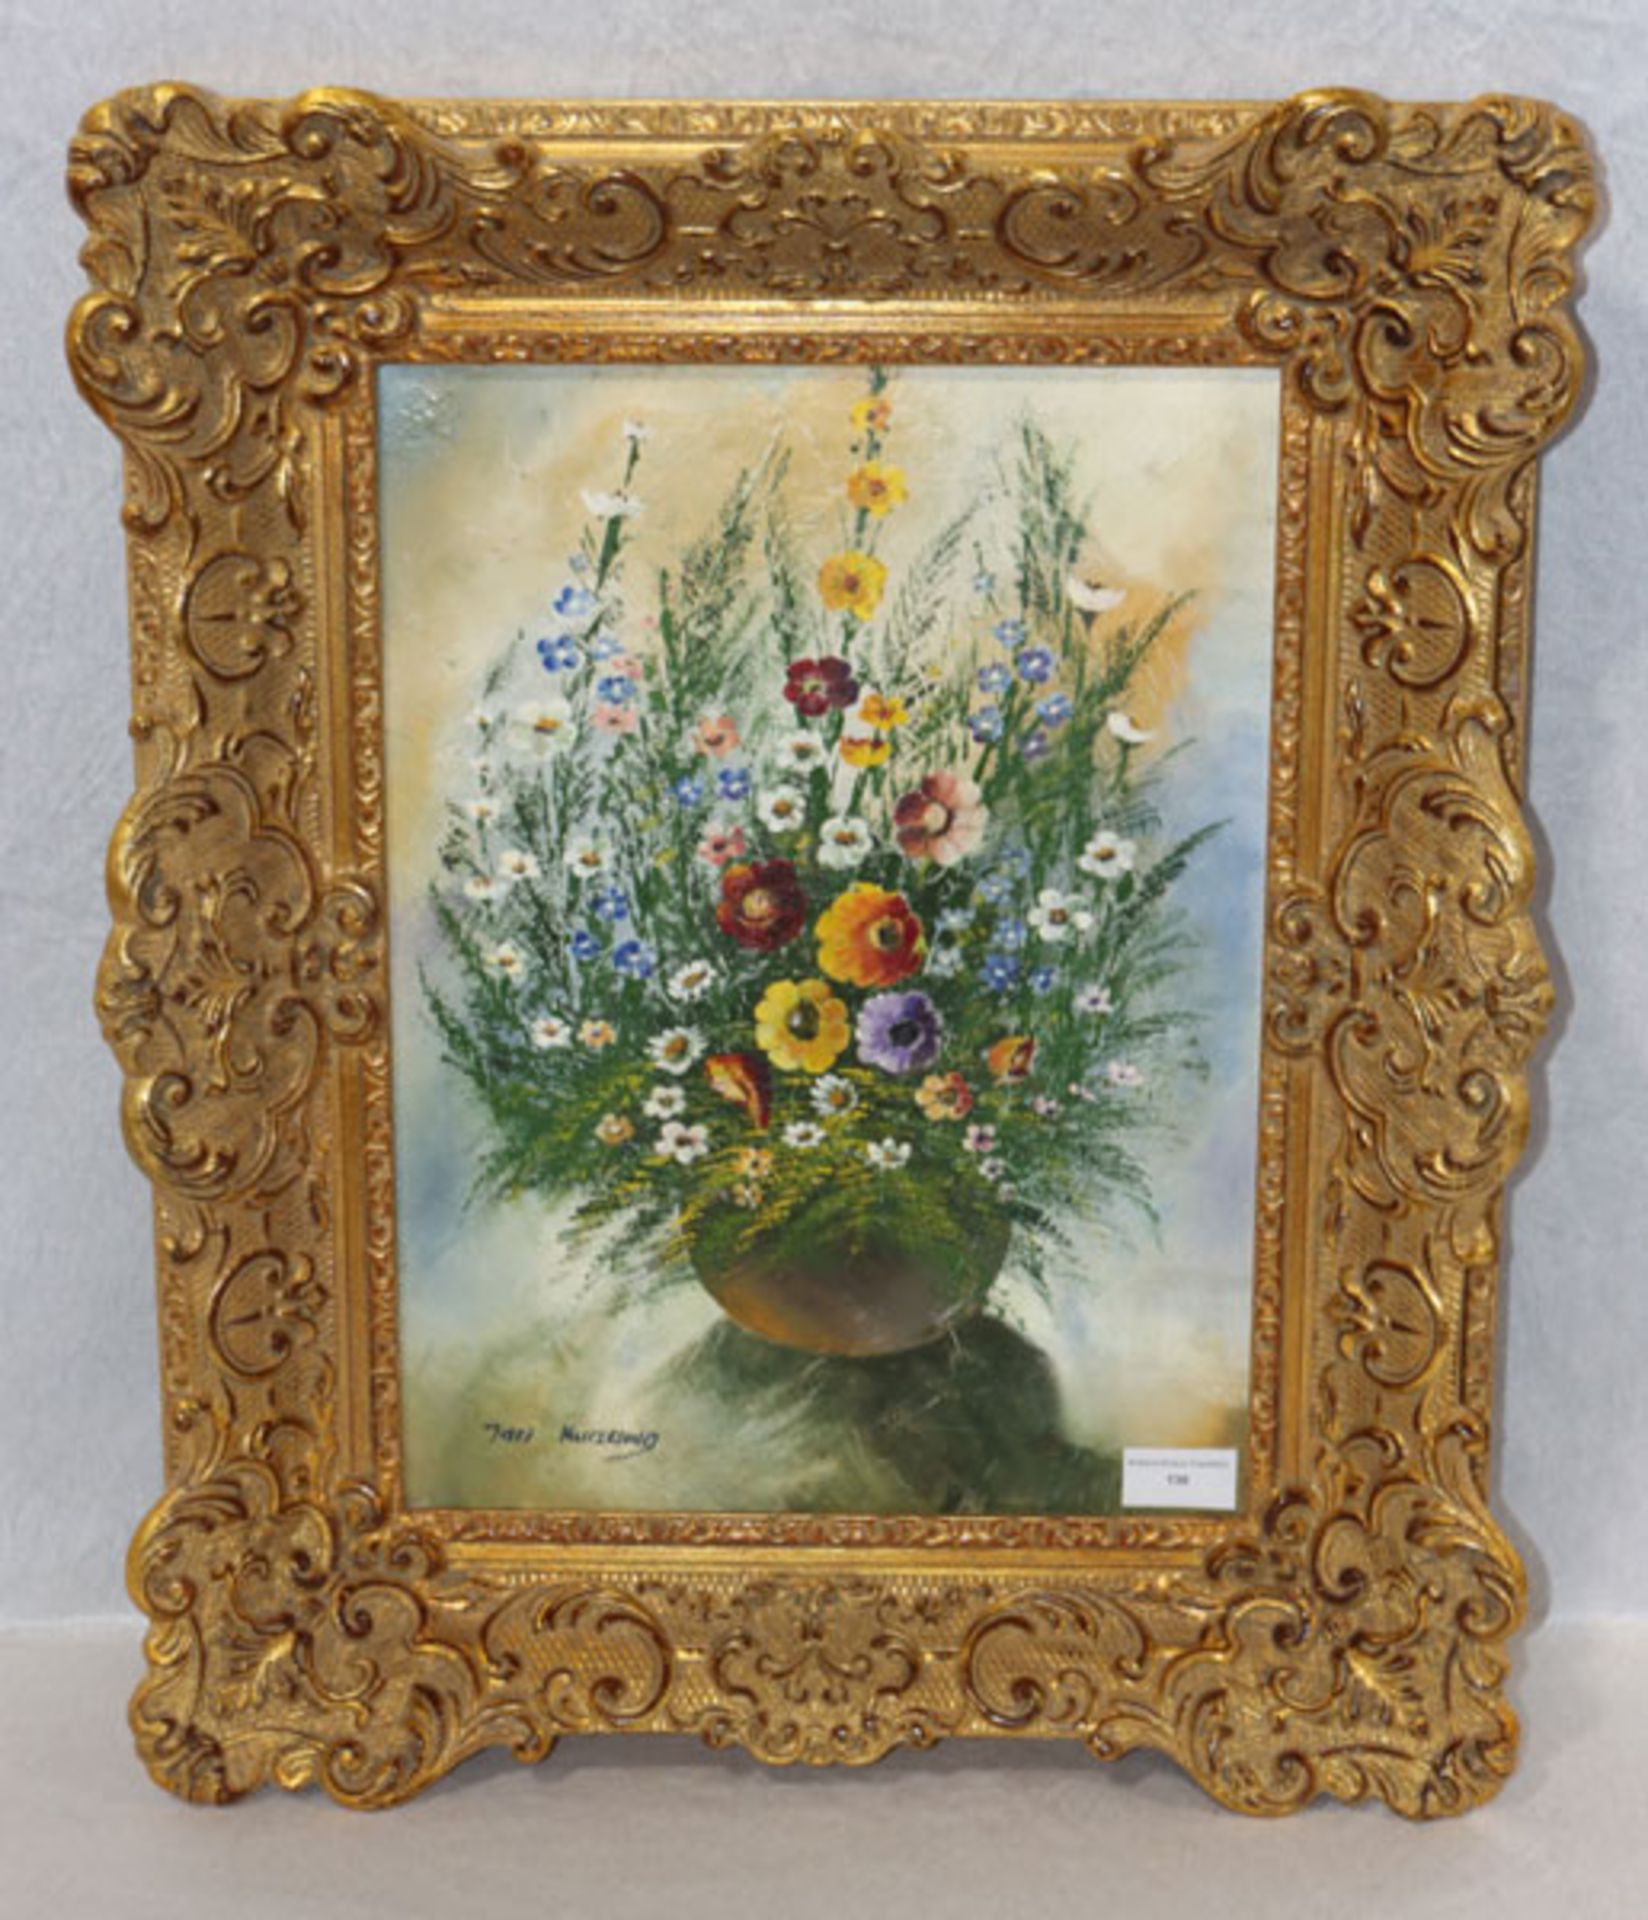 Gemälde ÖL/LW 'Blumenstillleben in Vase', signiert Jan Kurzung ?, dekorativ gerahmt, incl. Rahmen 56